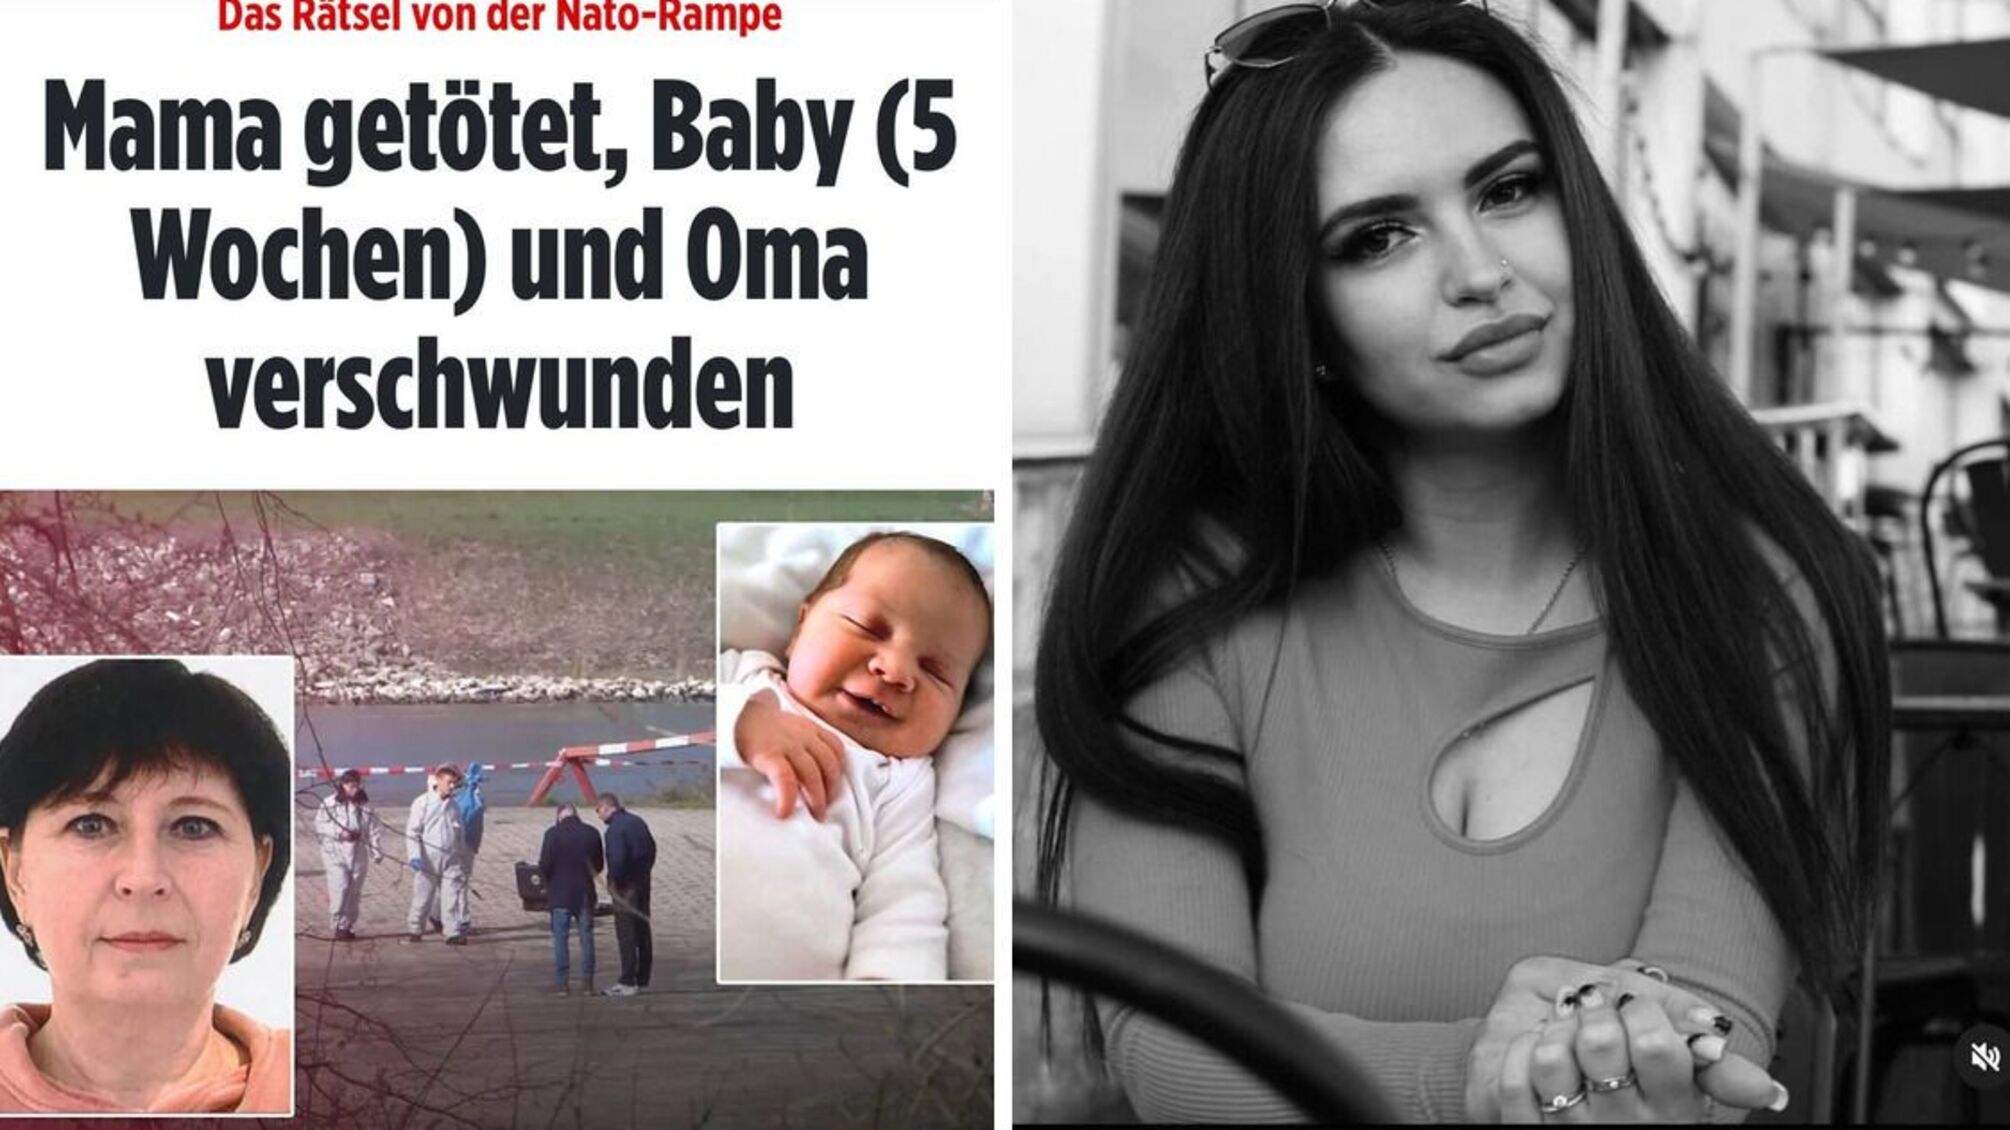 В Германии убили 27-летнюю украинку, а ее 5-недельная дочь и мать пропали без вести, – Bild